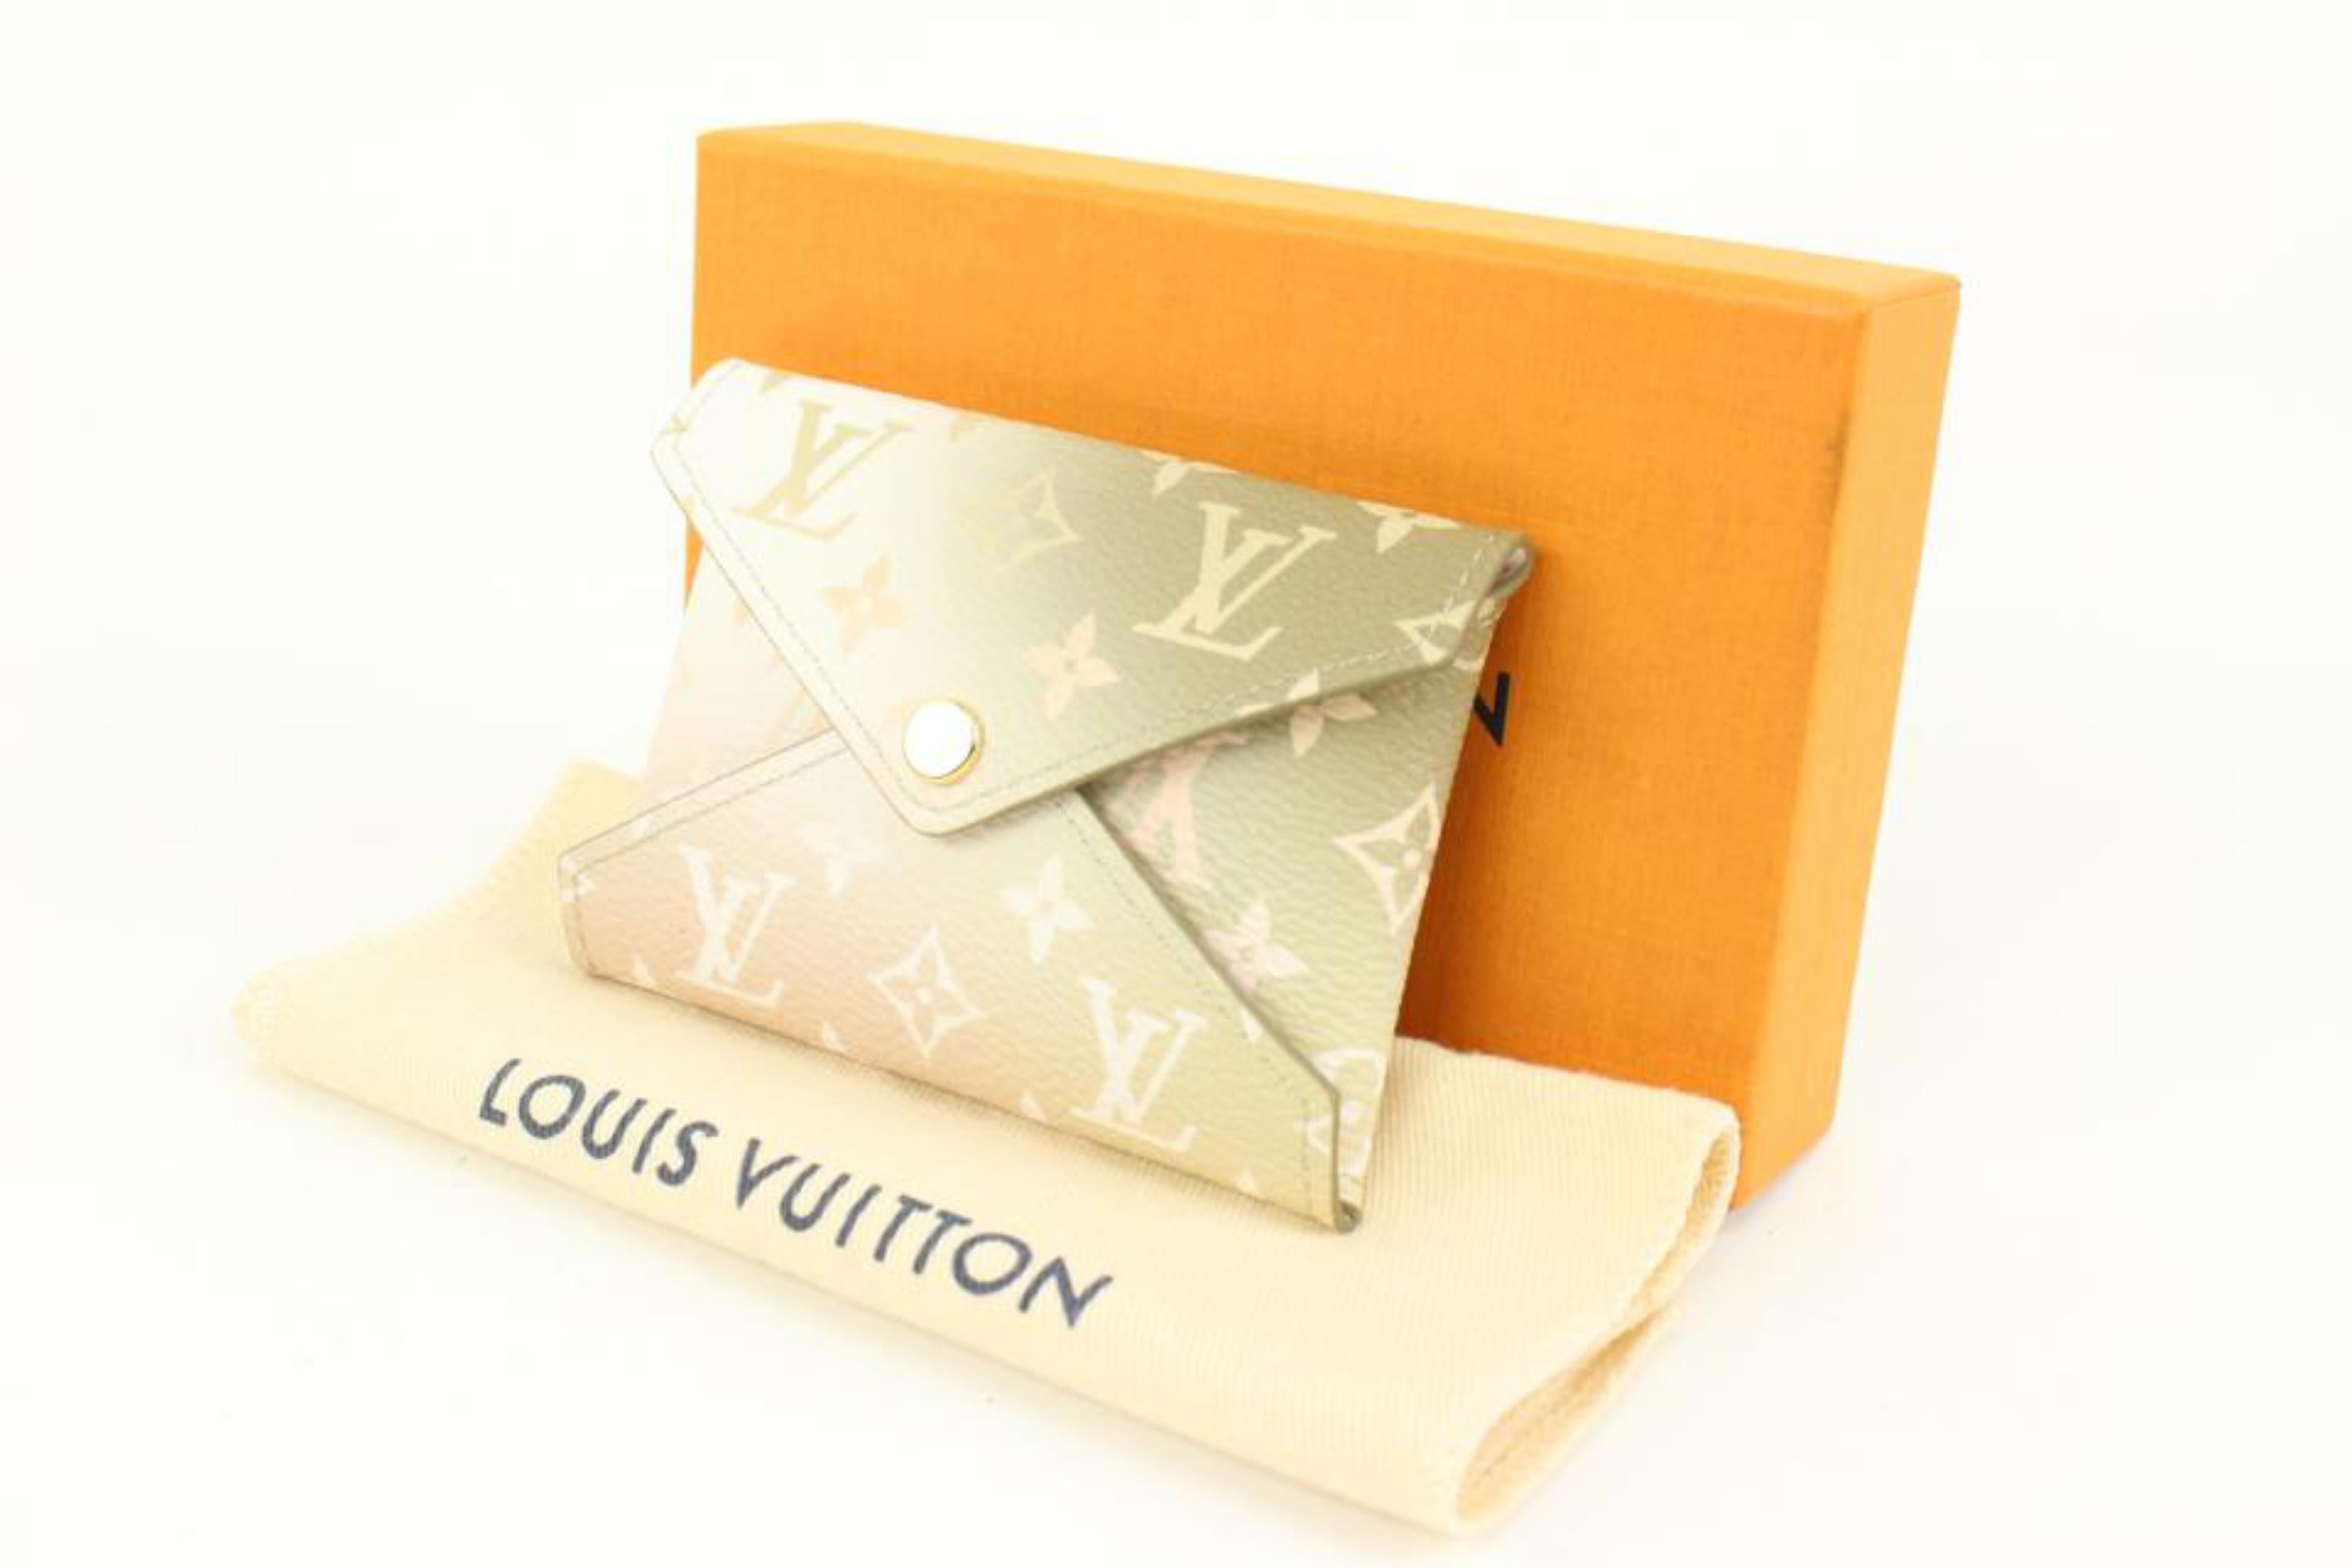 Louis Vuitton Kirigami Khaki - For Sale on 1stDibs  louis vuitton kirigami  small, louis vuitton kirigami green